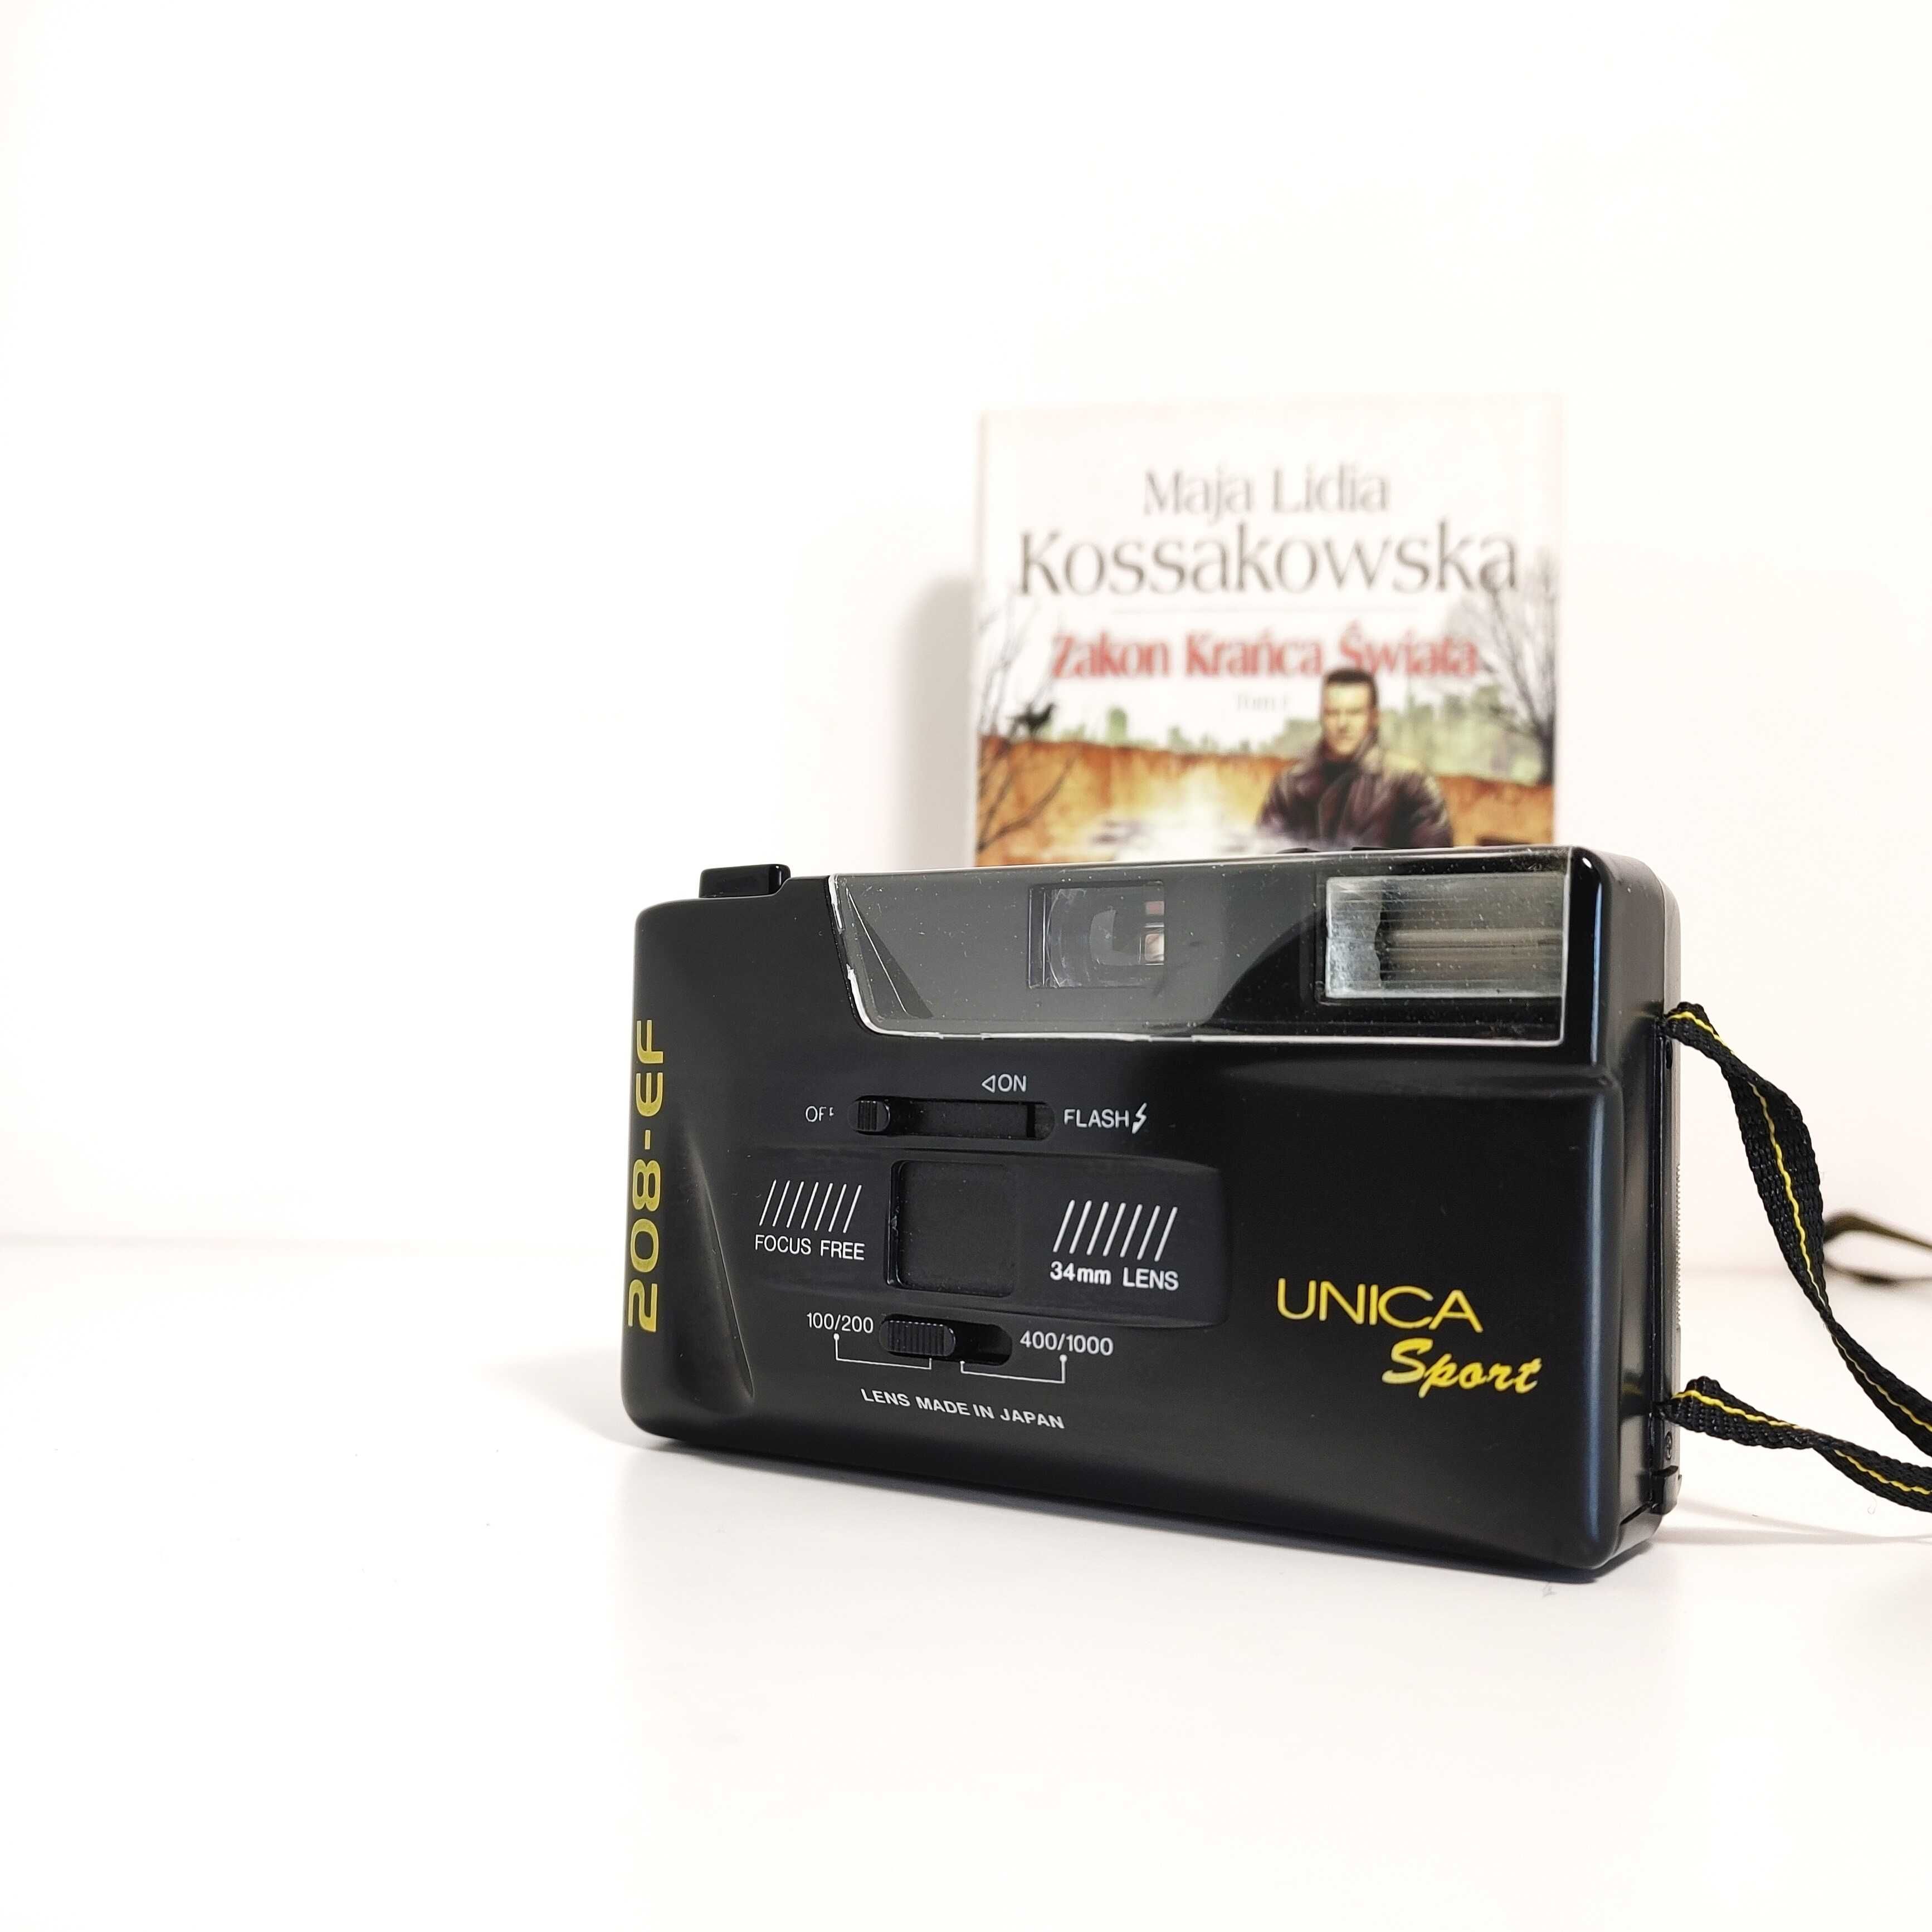 Analogowy kompaktowy aparat fotograficzny UNICA Sport 208 EF Na Plener